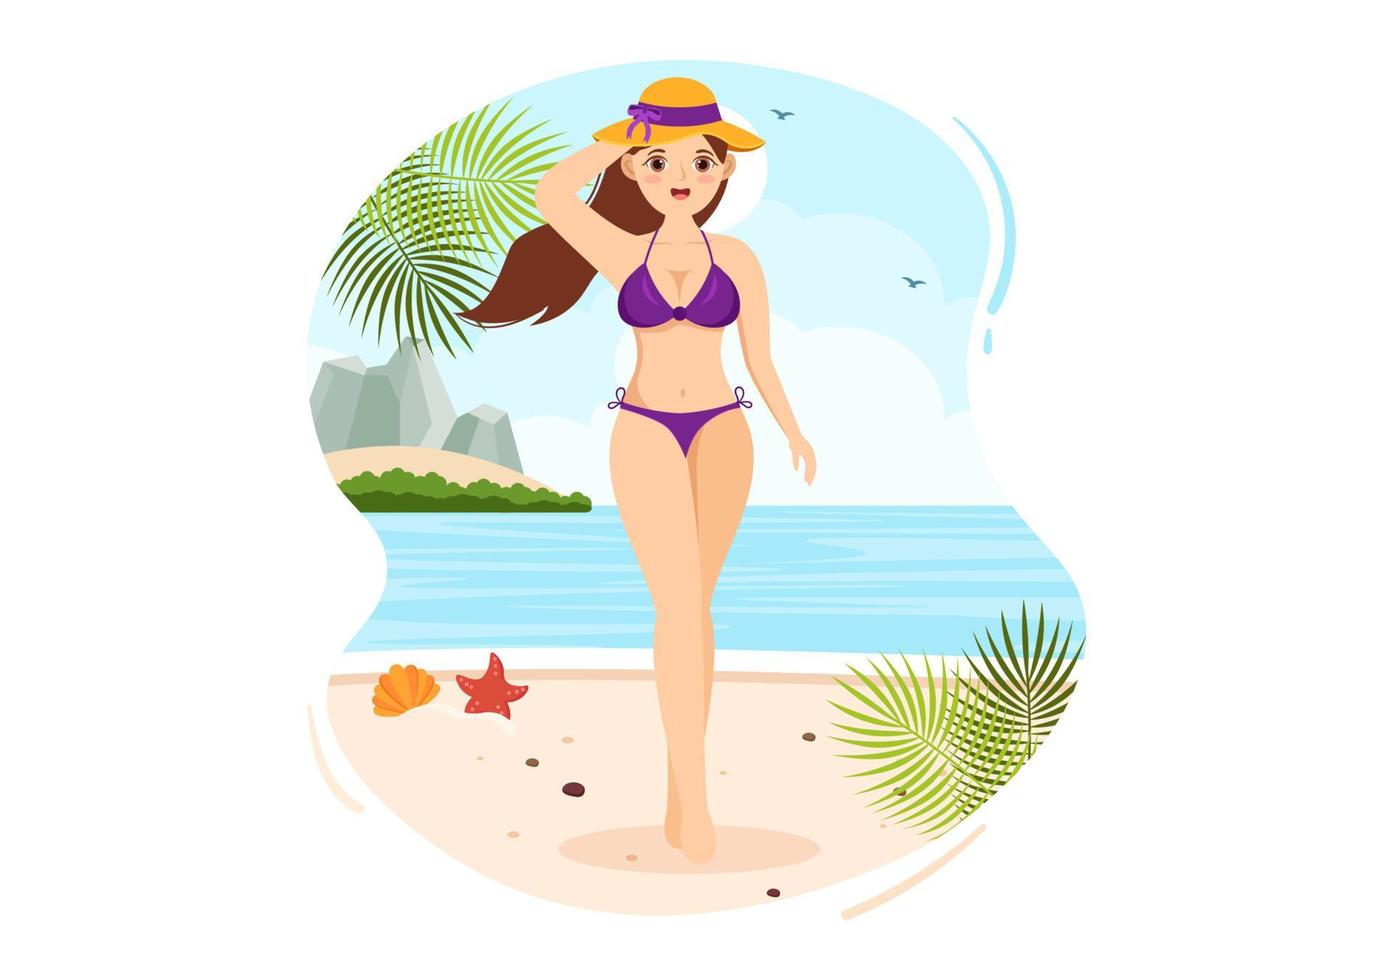 traje de baño con diferentes diseños de bikinis y trajes de baño para mujeres en la playa de verano en dibujos animados de estilo plano ilustración de plantillas dibujadas a mano vector